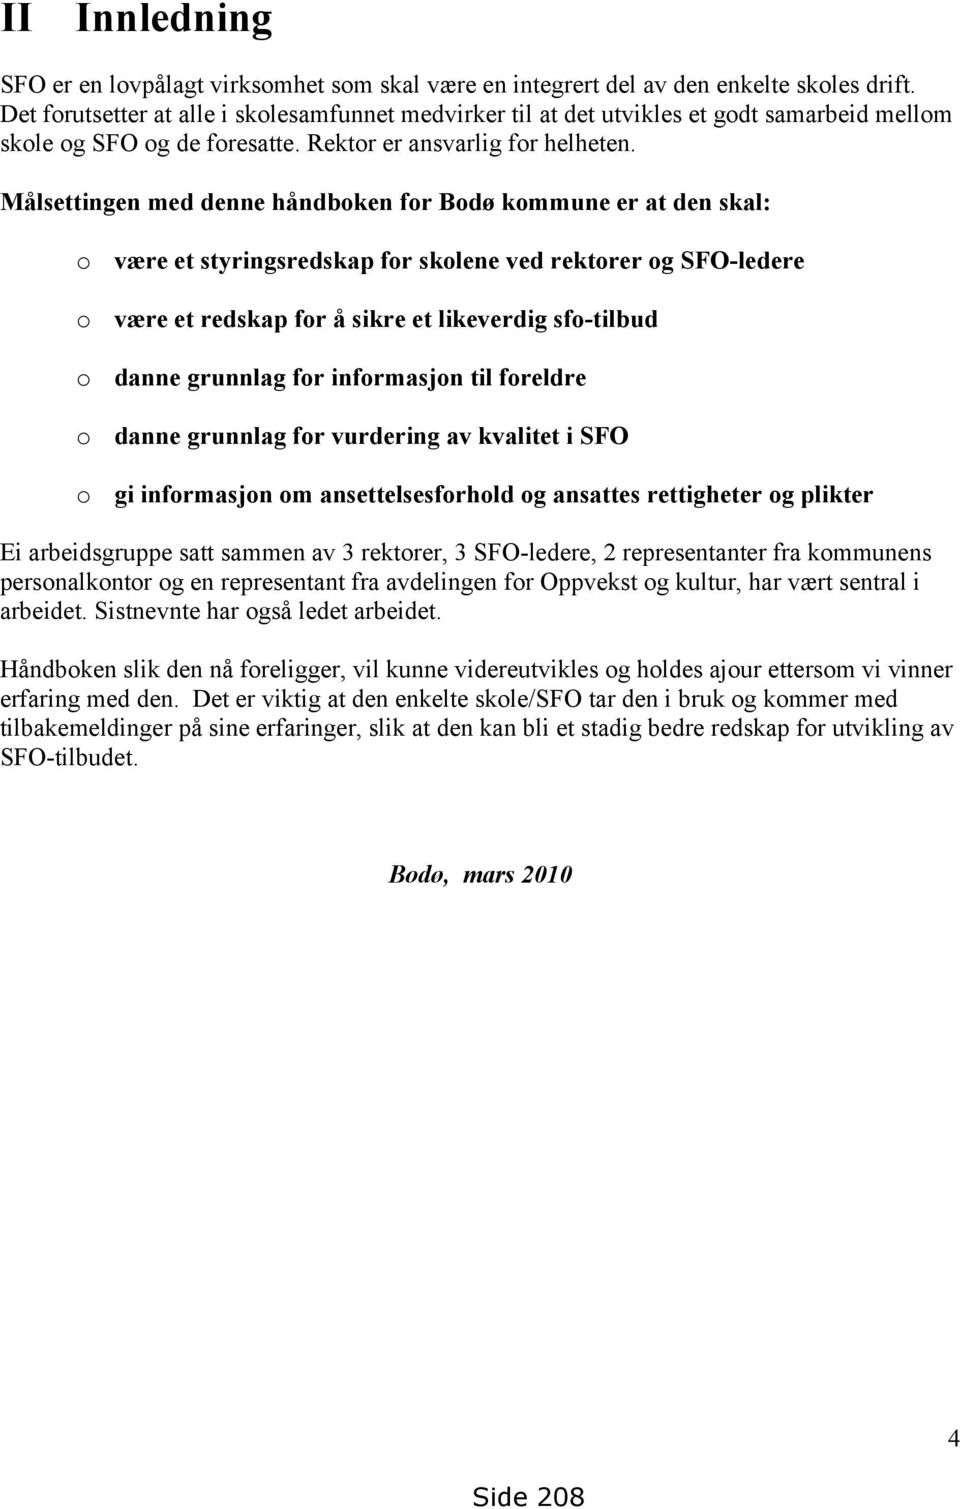 Målsettingen med denne håndboken for Bodø kommune er at den skal: o være et styringsredskap for skolene ved rektorer og SFO-ledere o være et redskap for å sikre et likeverdig sfo-tilbud o danne